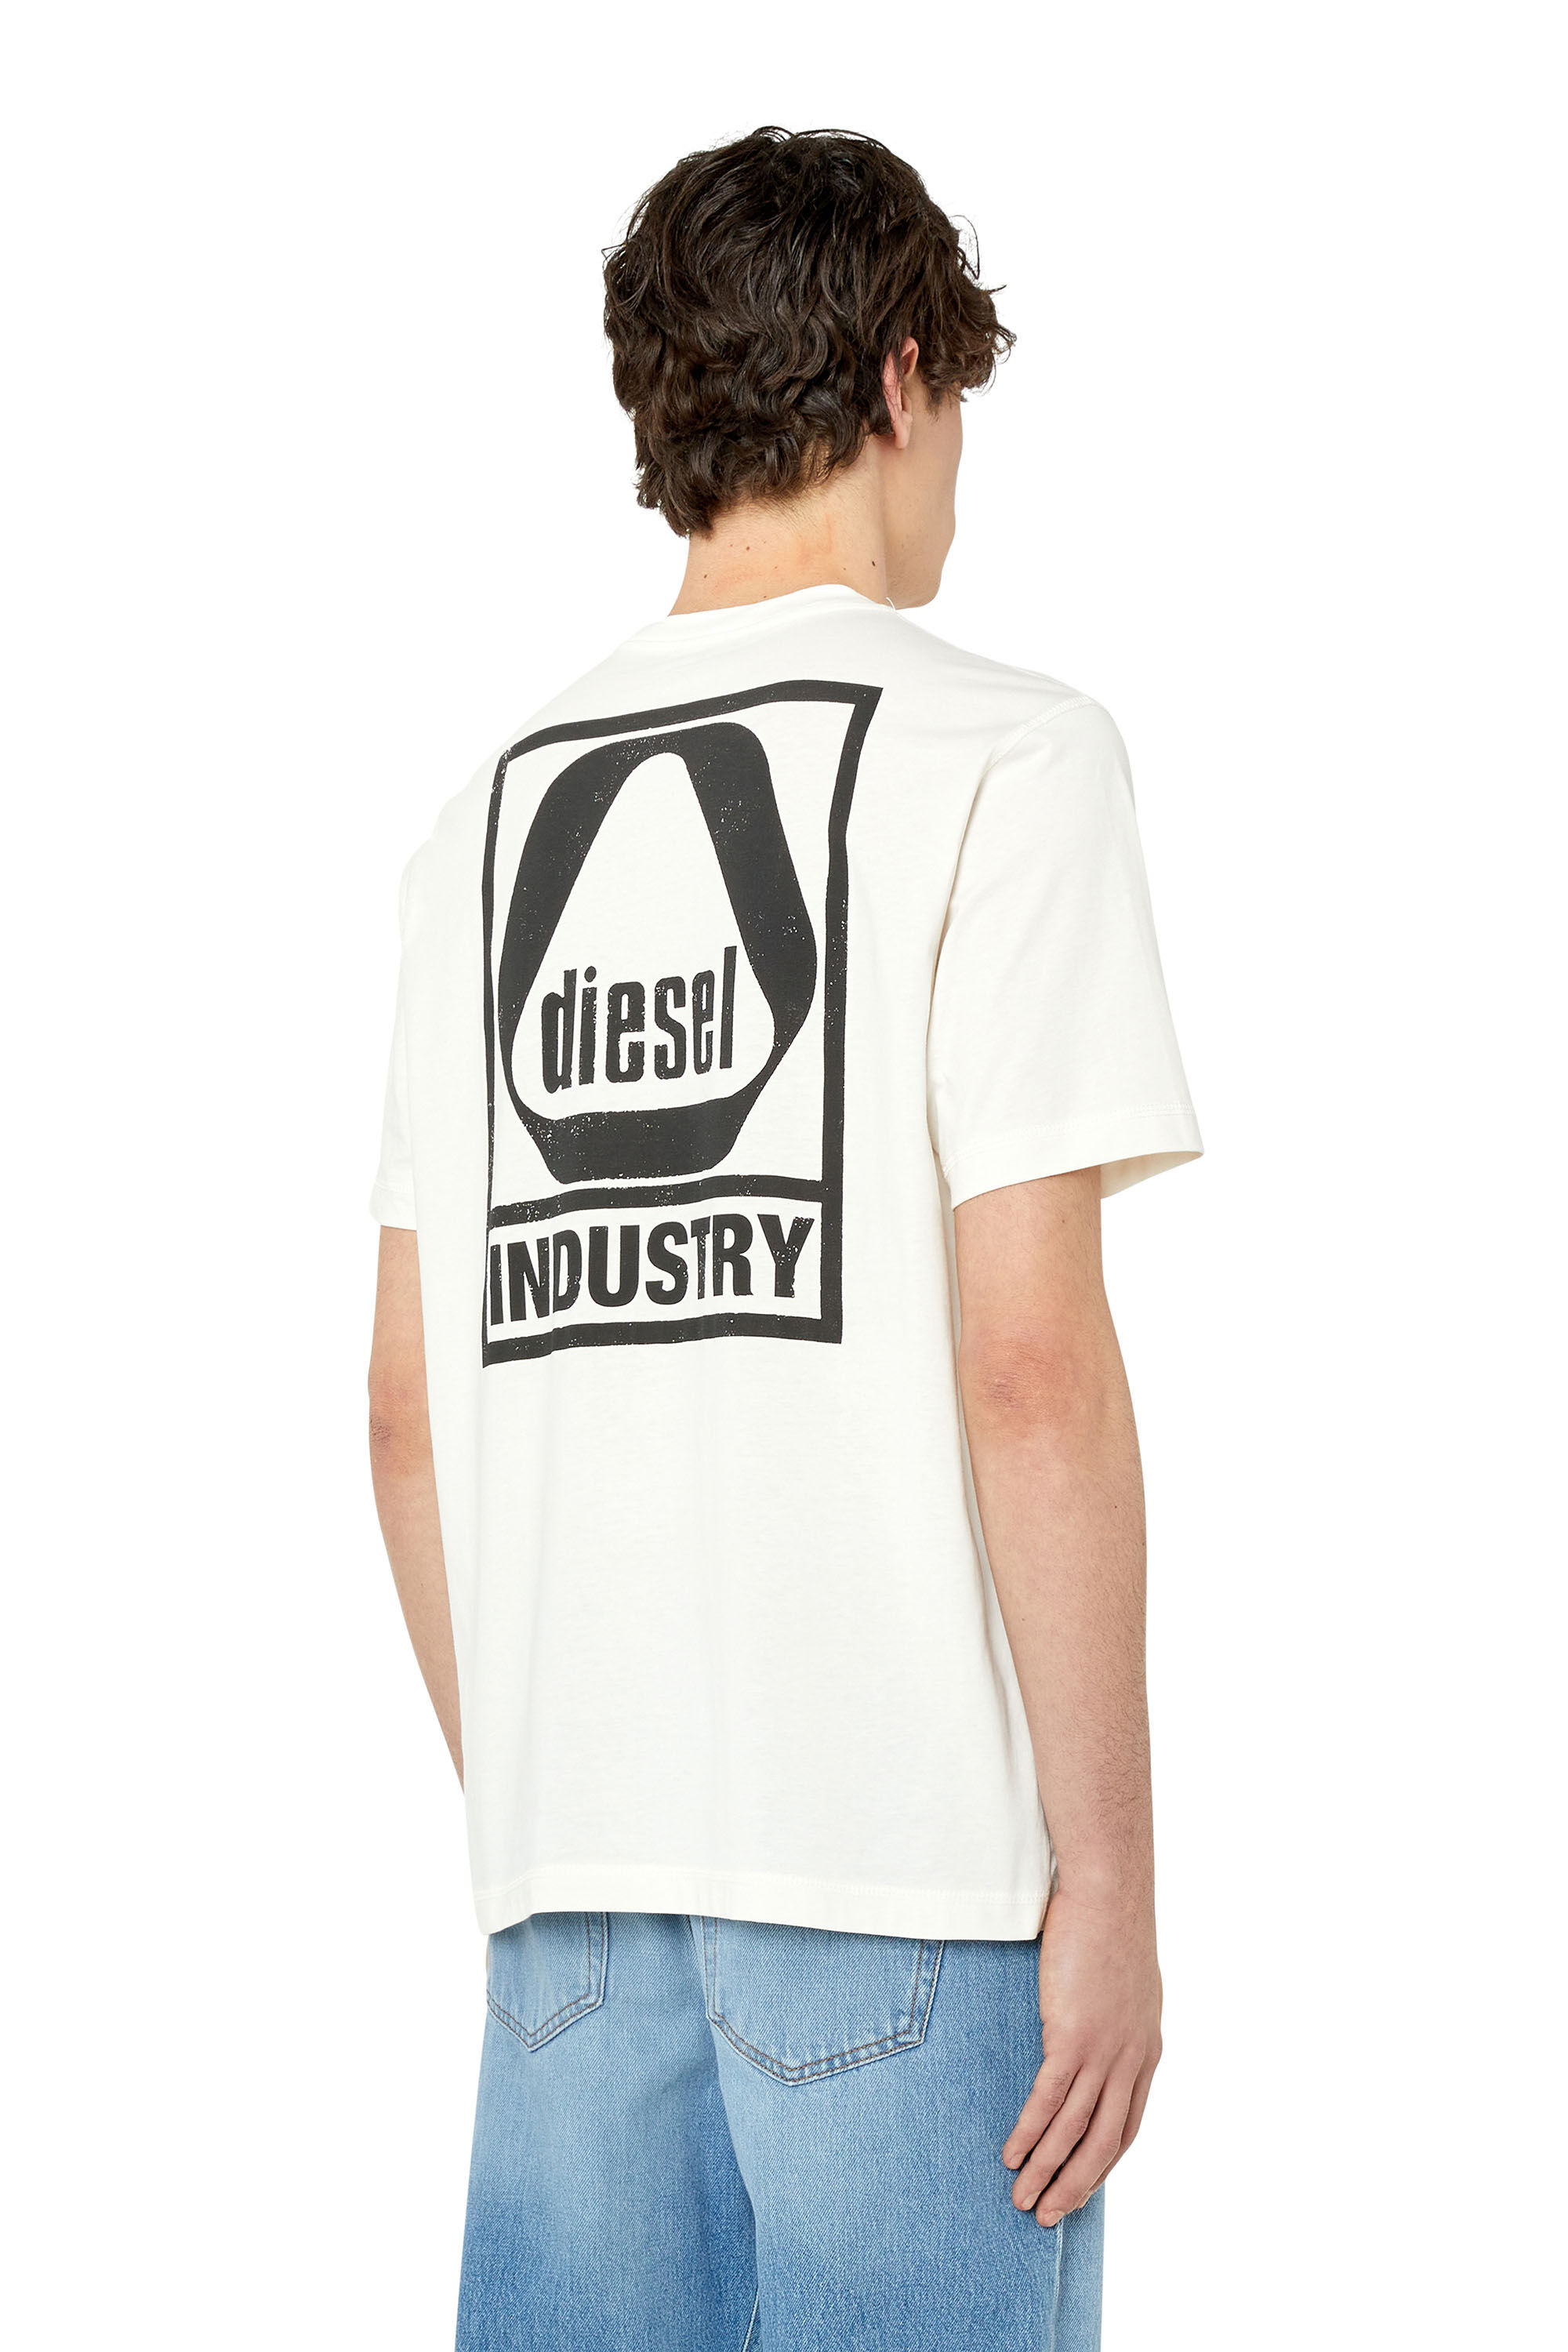 dieselのTシャツ